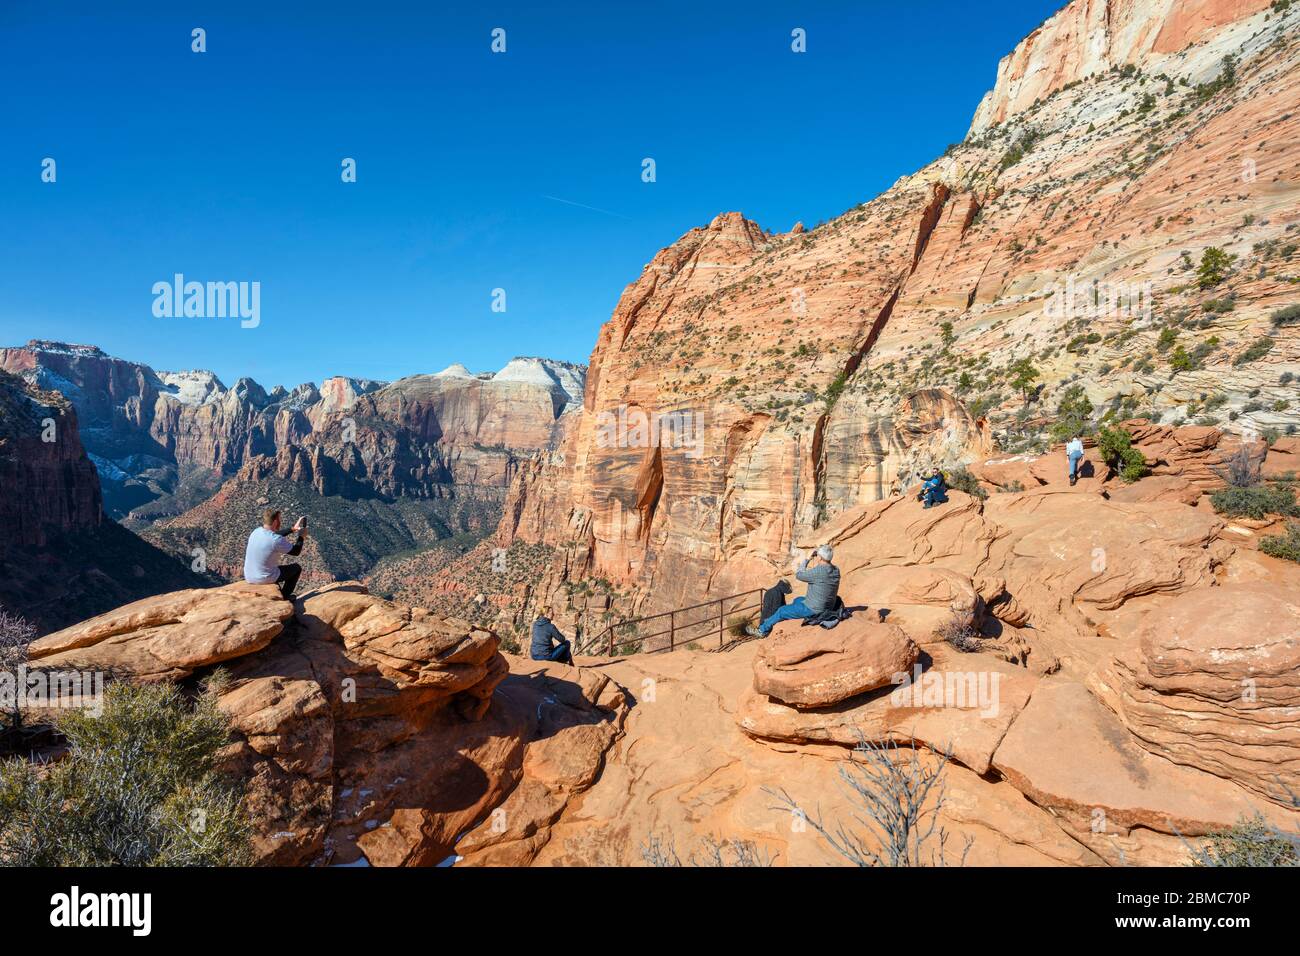 Les marcheurs qui contemple vue sur le canyon de Zion surplombent le Canyon, parc national de Zion, Utah, États-Unis Banque D'Images